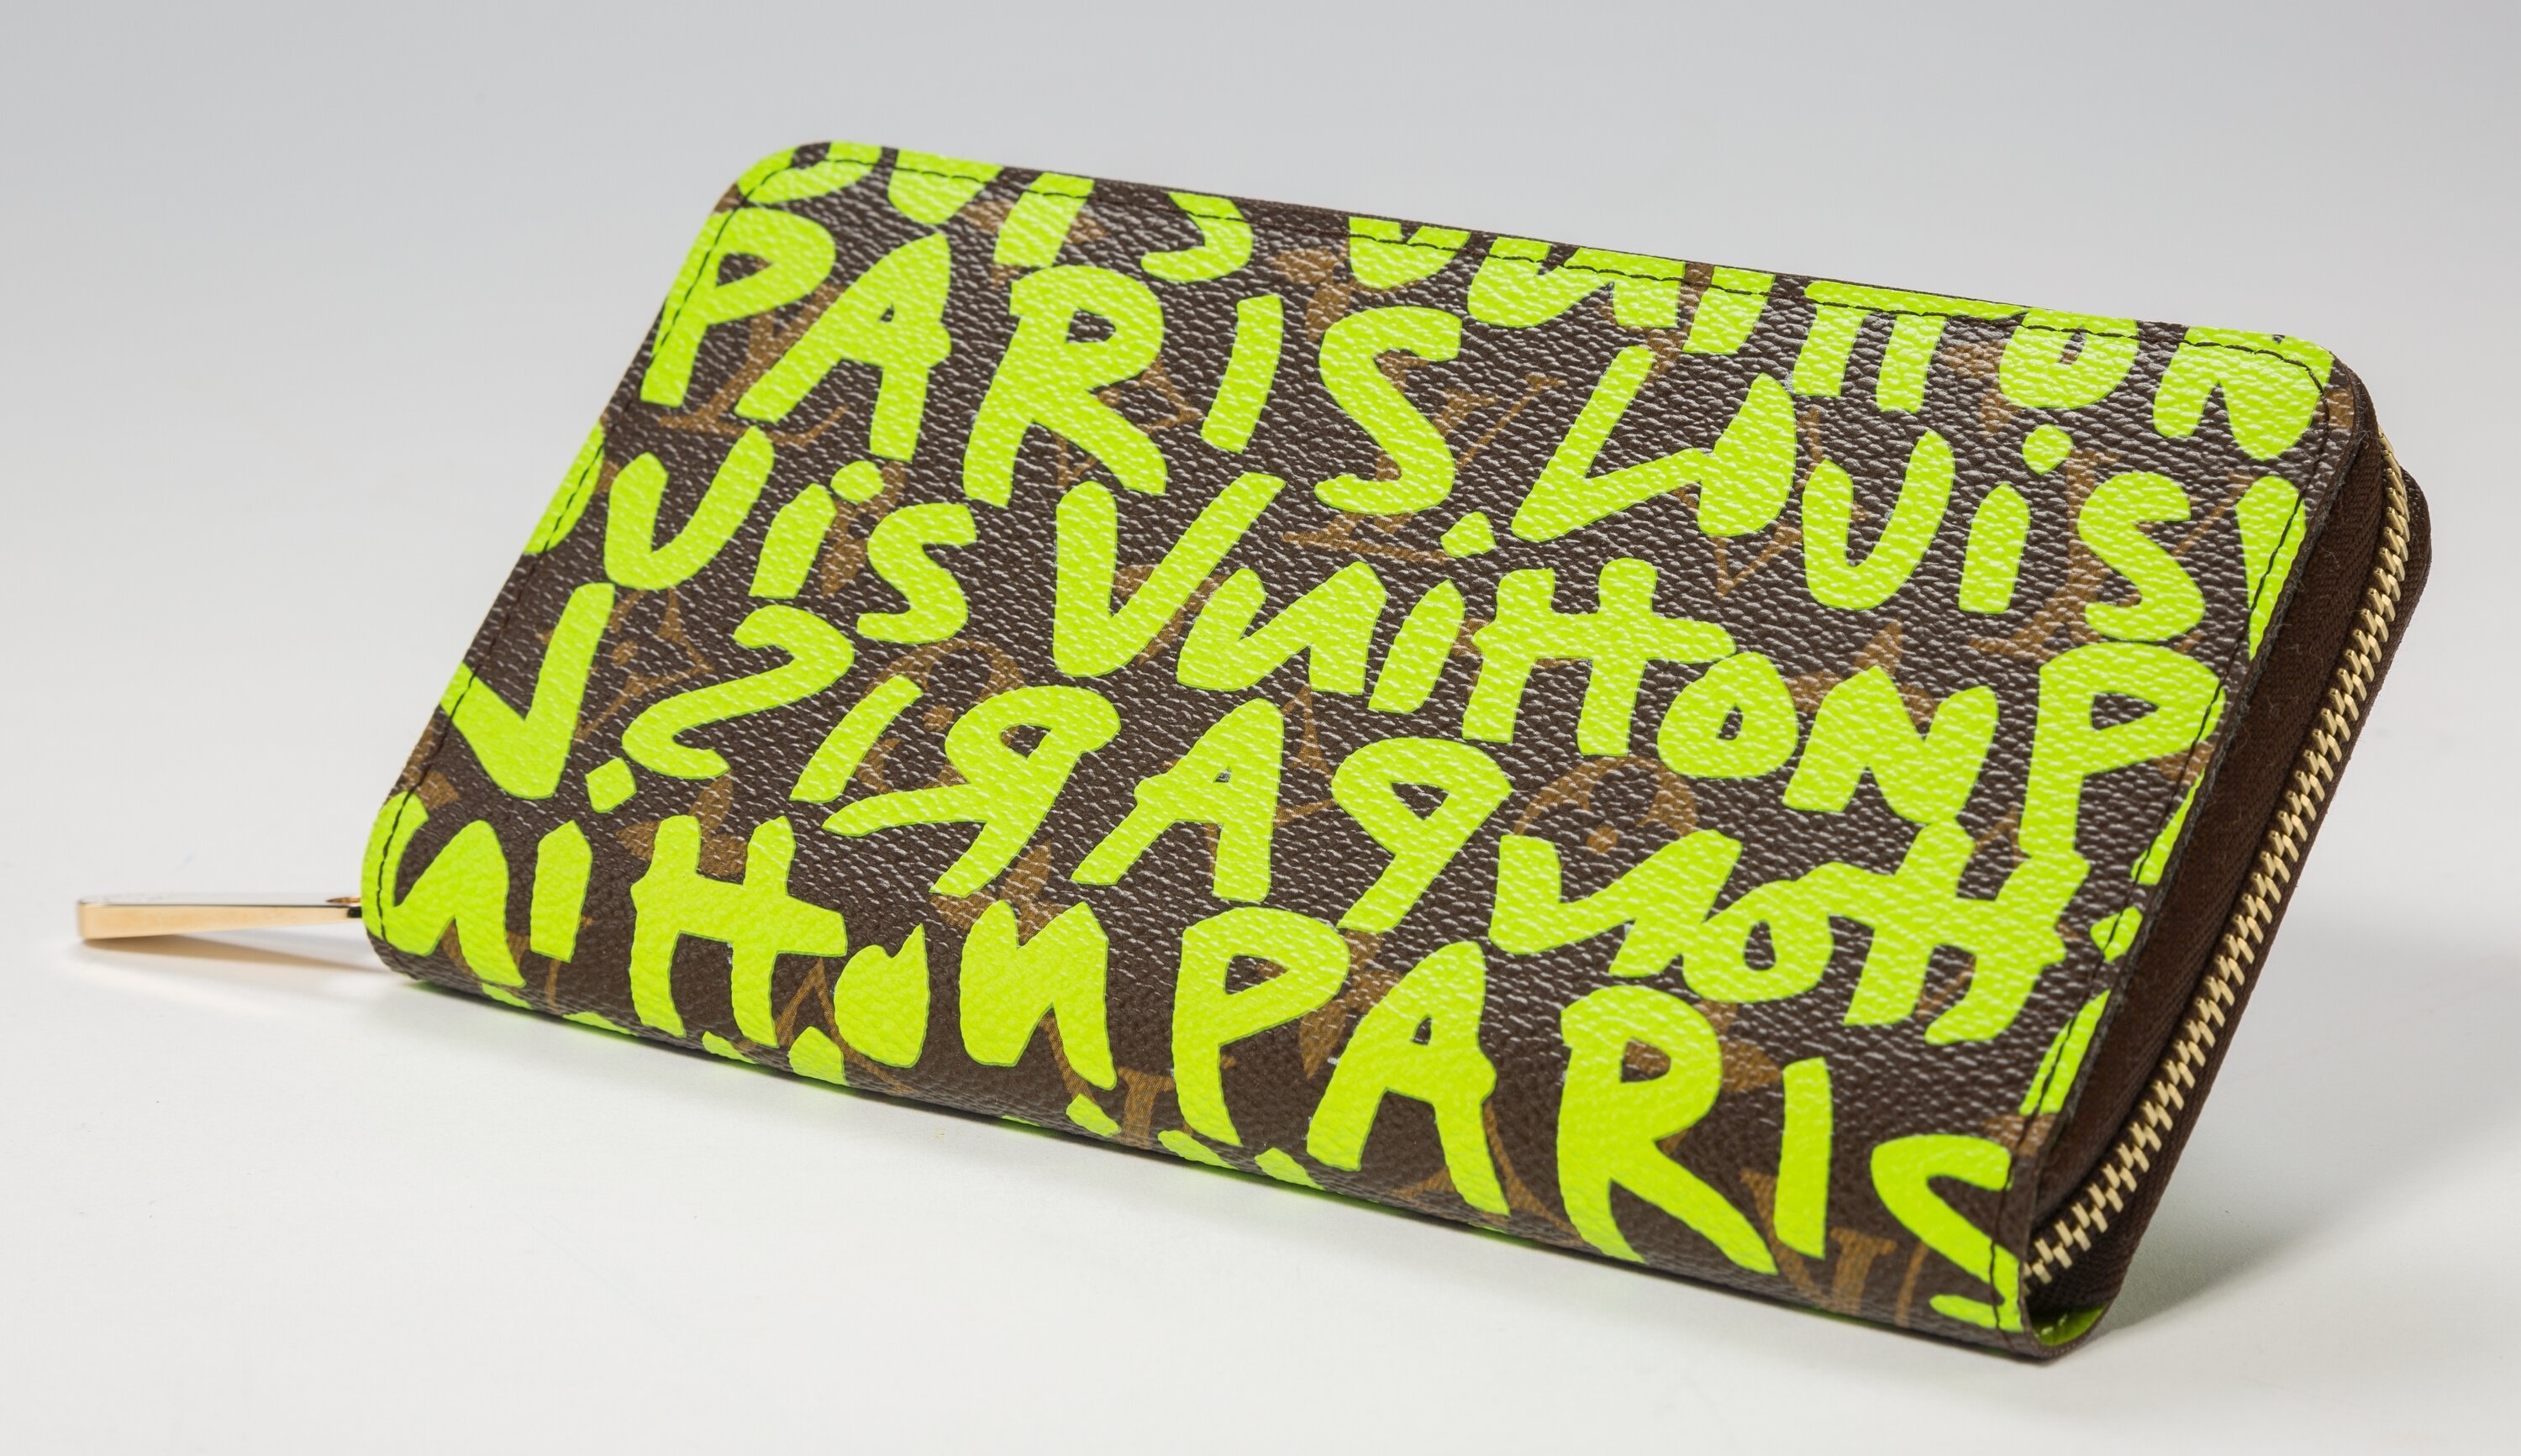 Louis Vuitton Graffiti Zippy Wallet